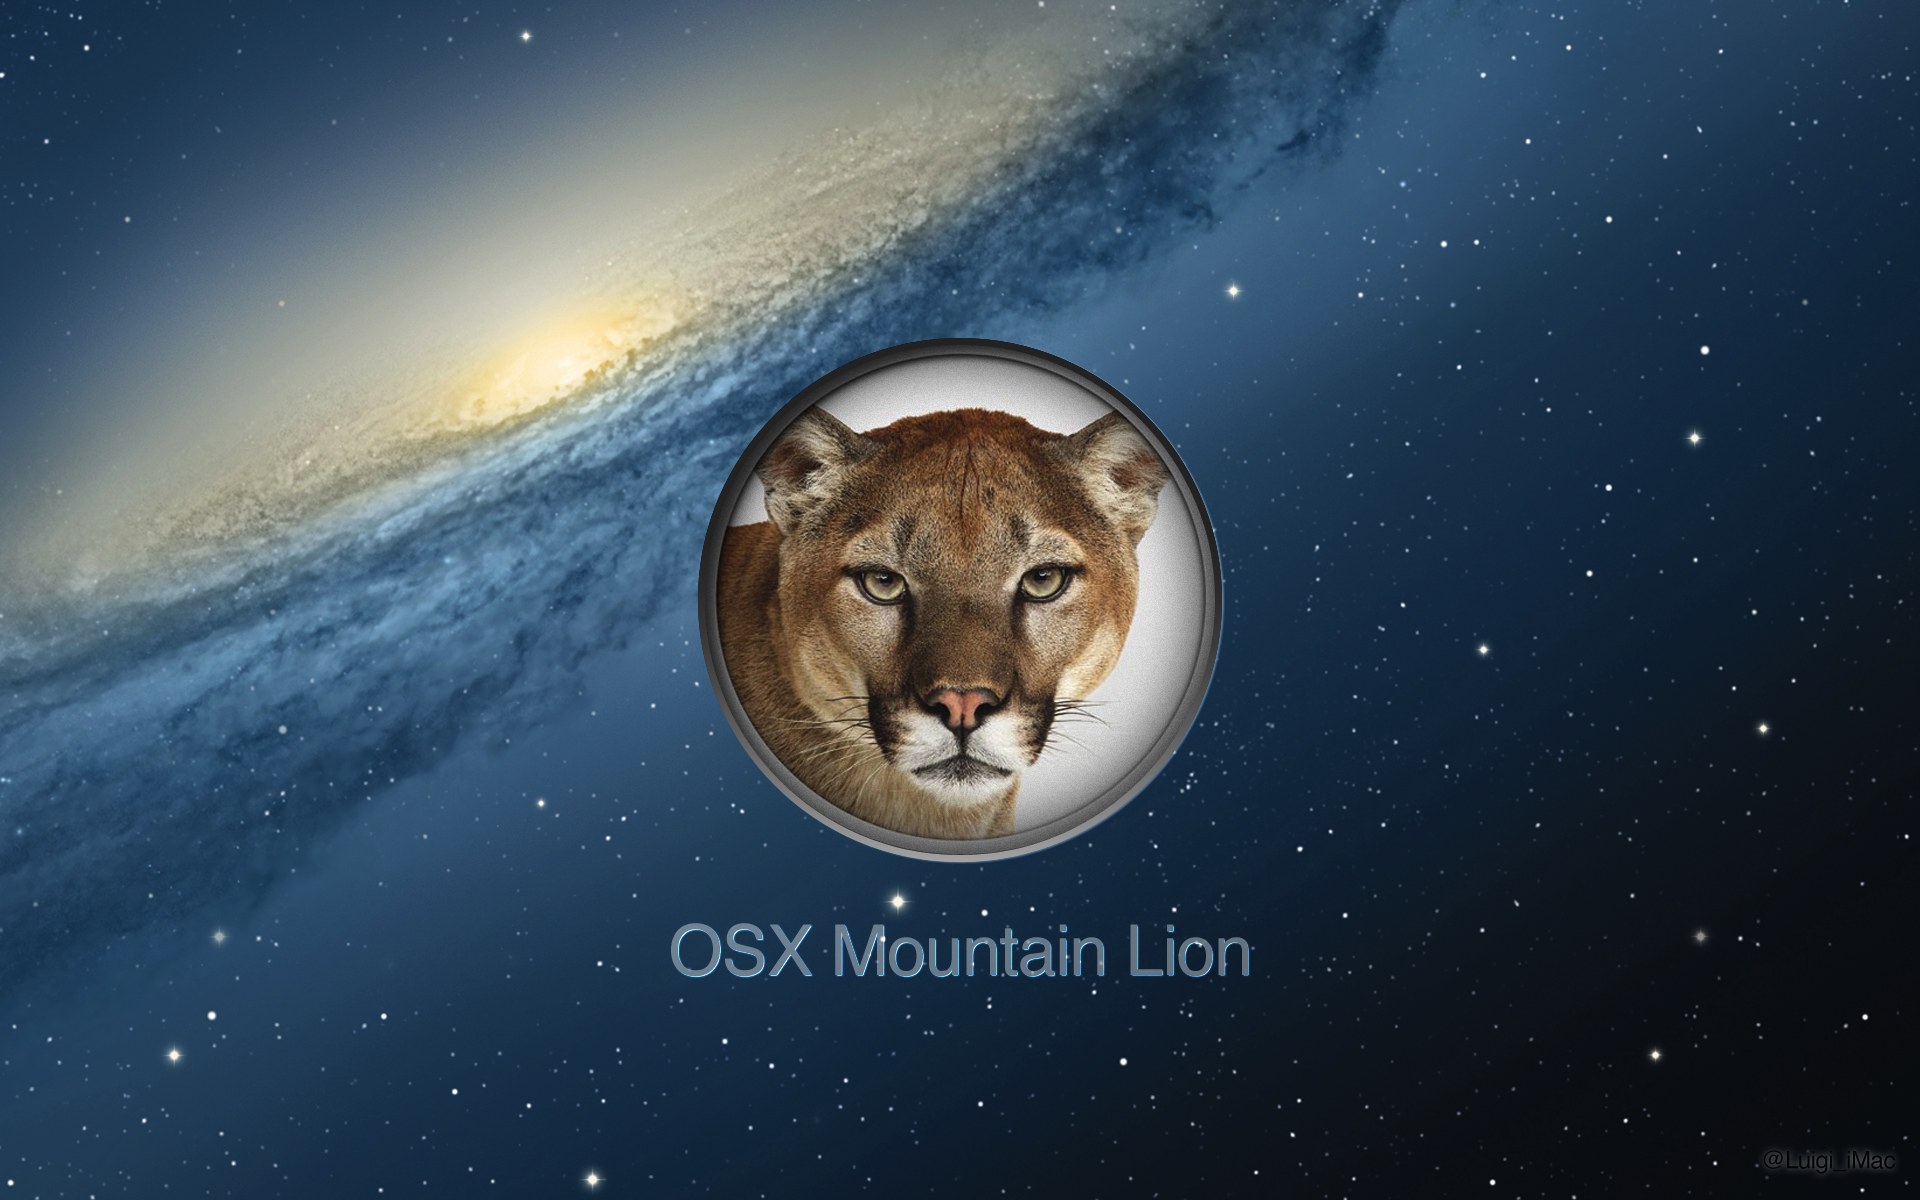 os x mountain lion wallpaper,atmosphere,felidae,sky,wildlife,space